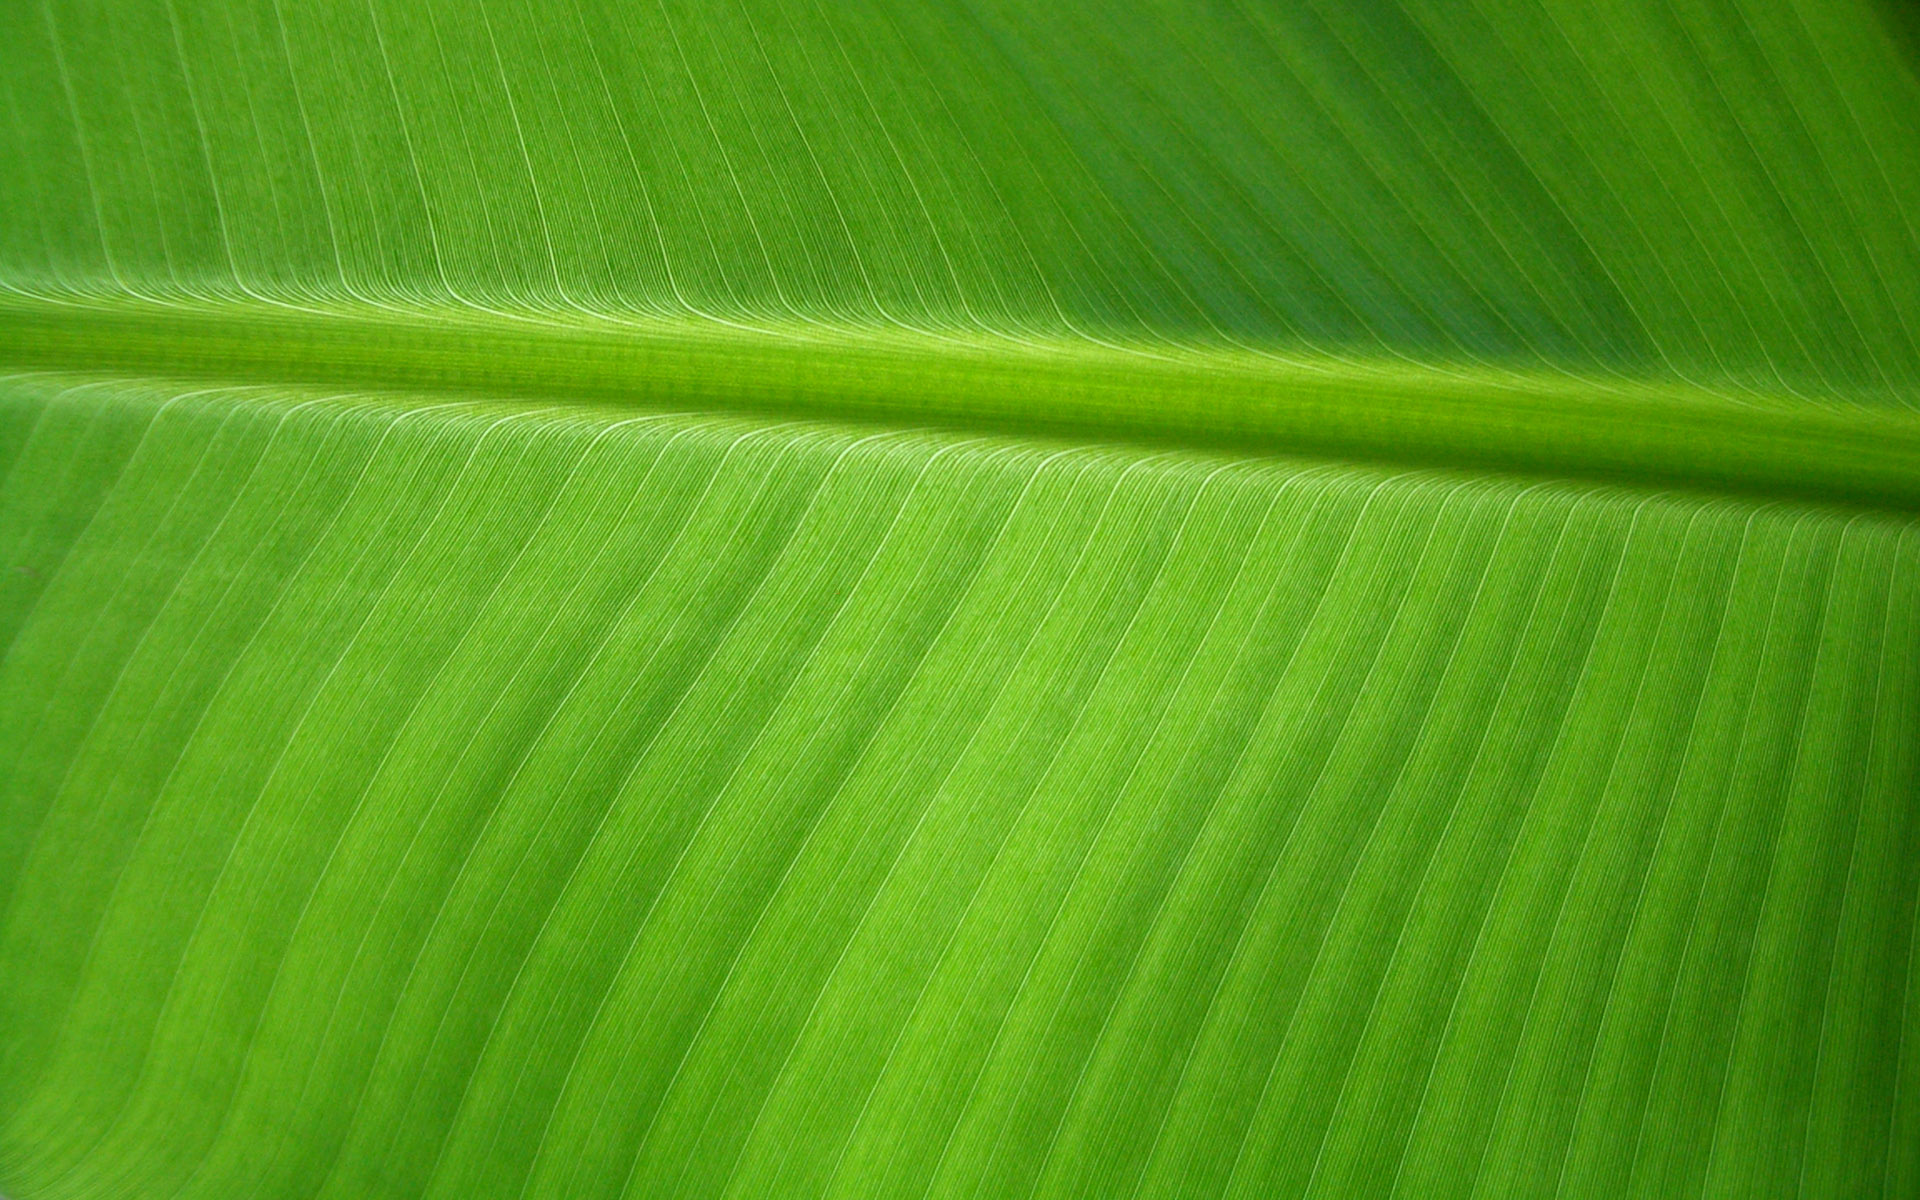 Banana Leaf by OrodrethC on DeviantArt